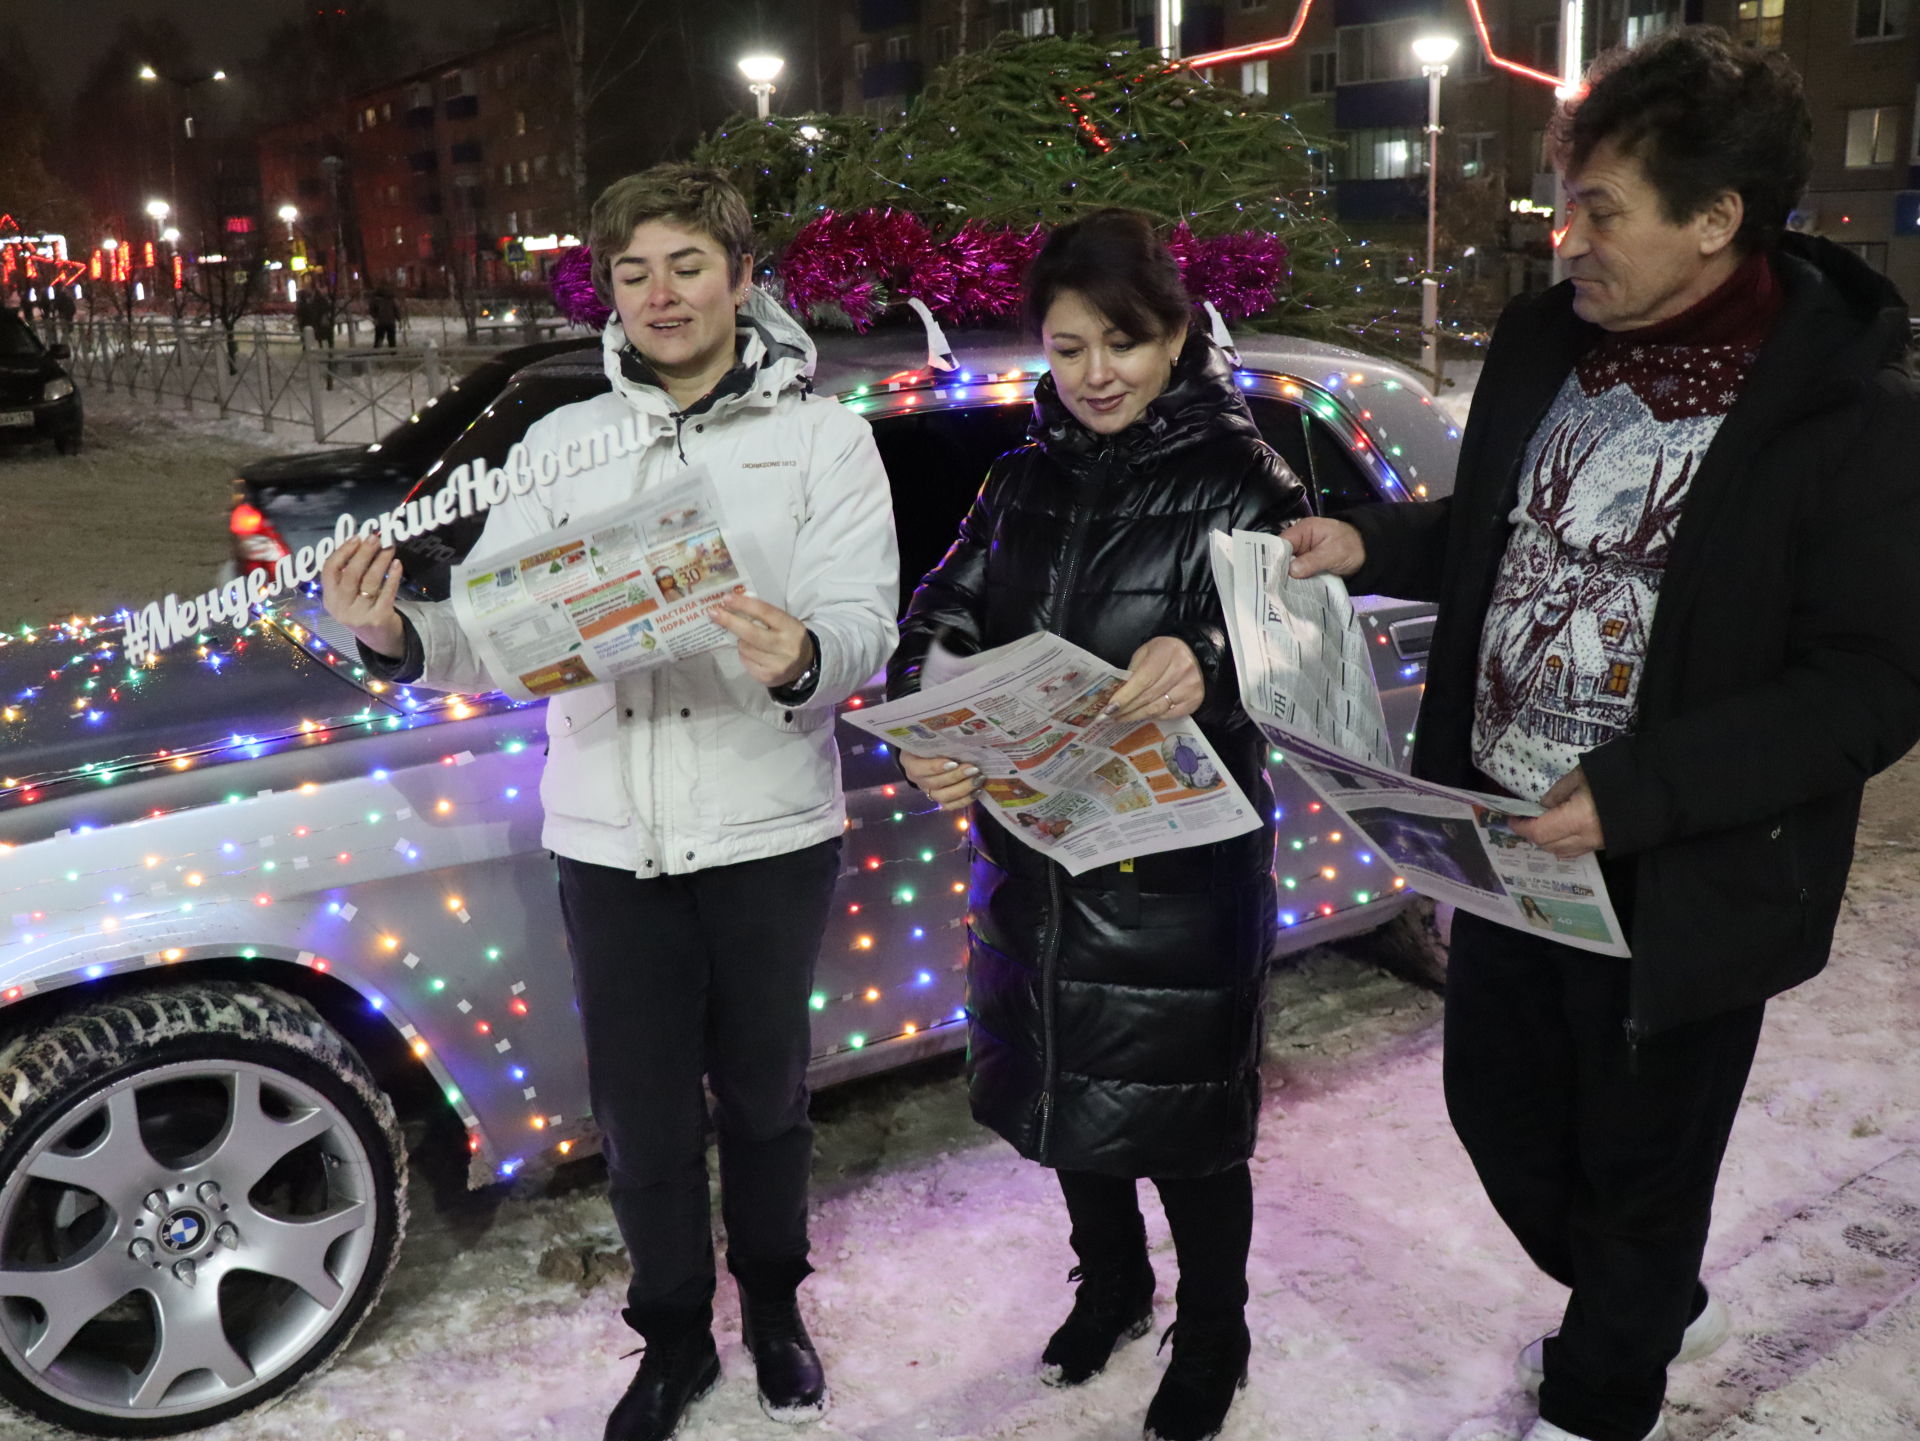 Светящаяся машина, Дед Мороз и Снегурочка: как прошел день подписчика